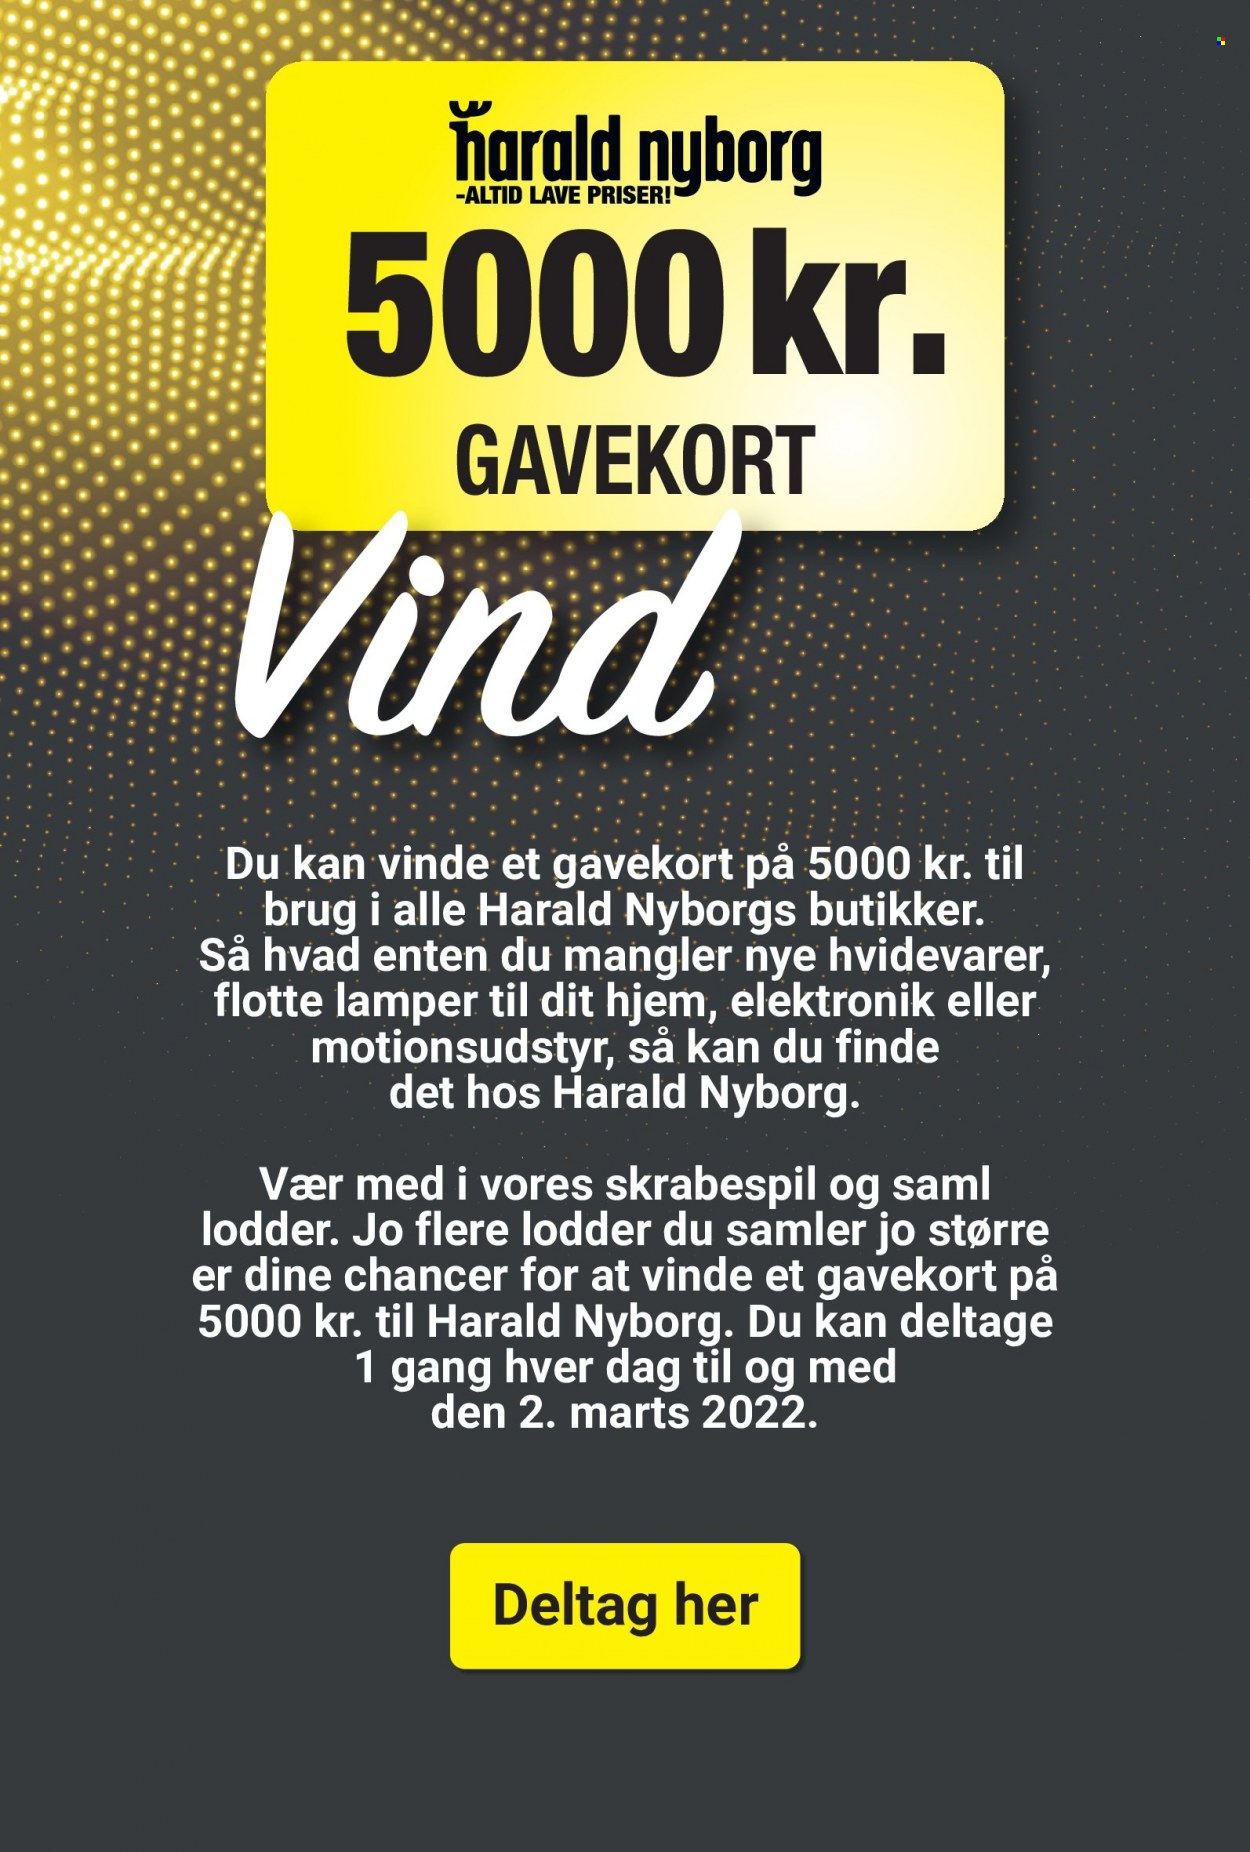 Harald Nyborg tilbudsavis  - 27.01.2022 - 02.02.2022. Side 2.